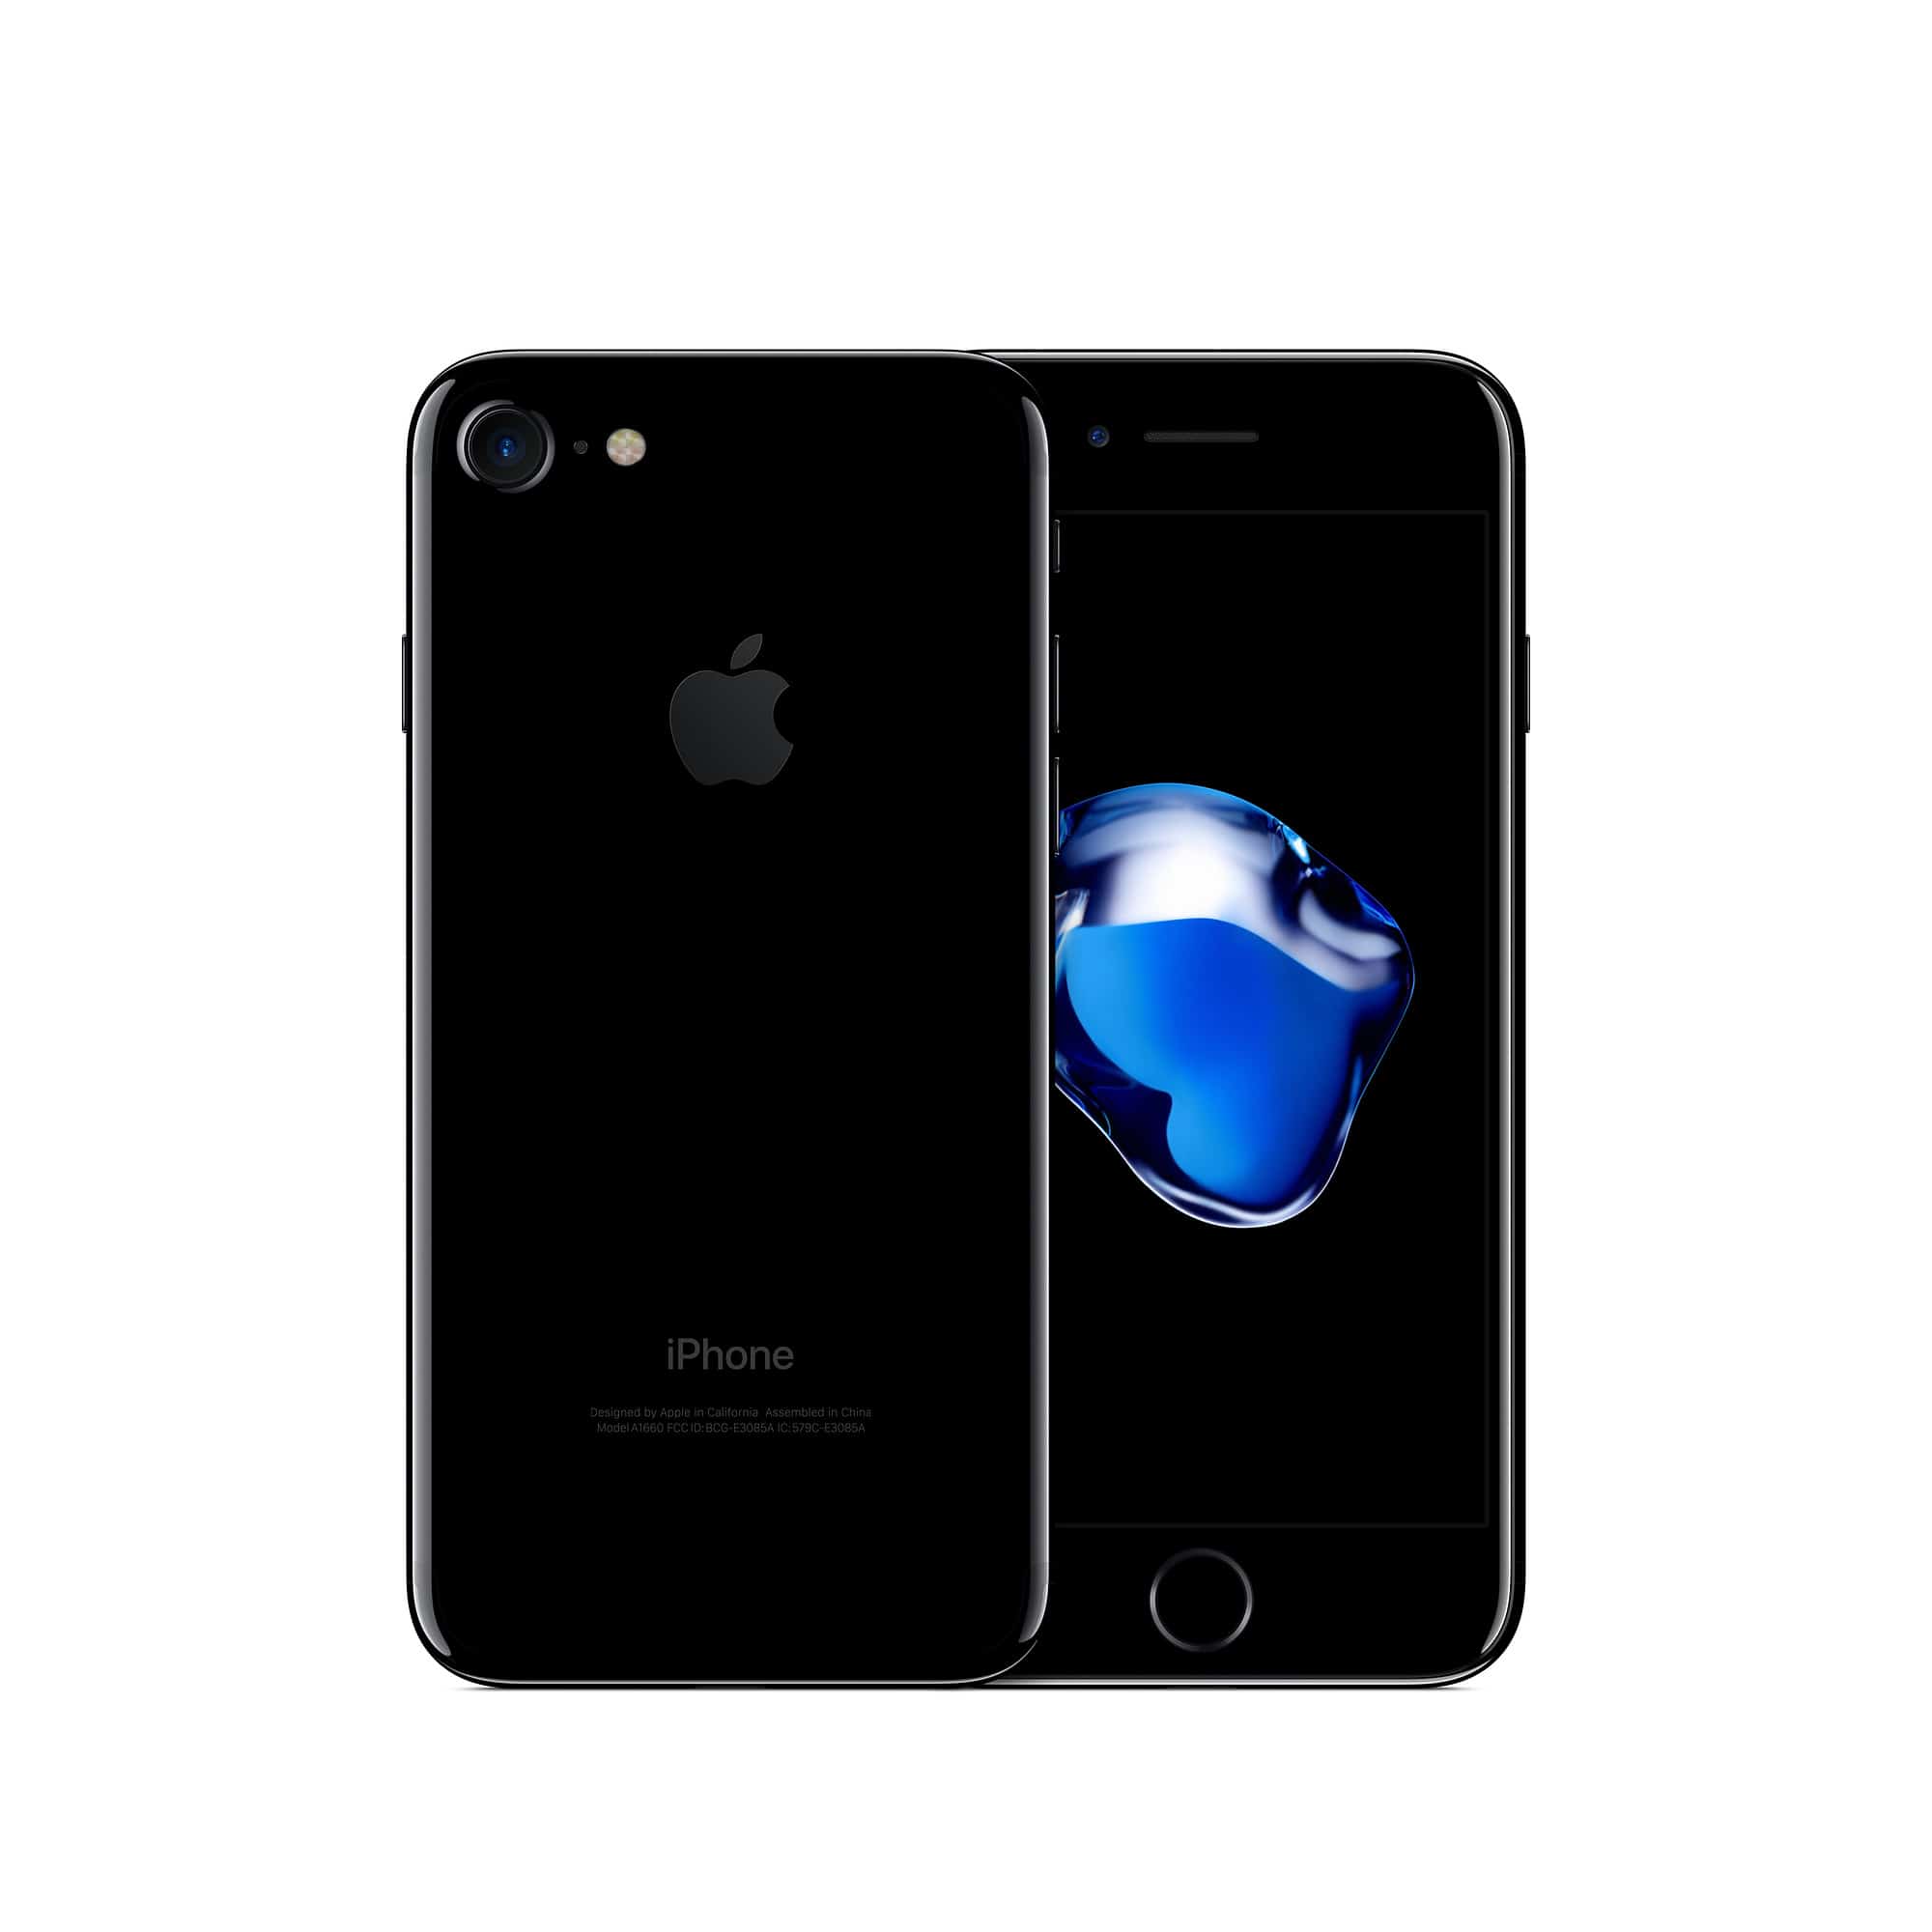 iPhone 7 Black 128 GB